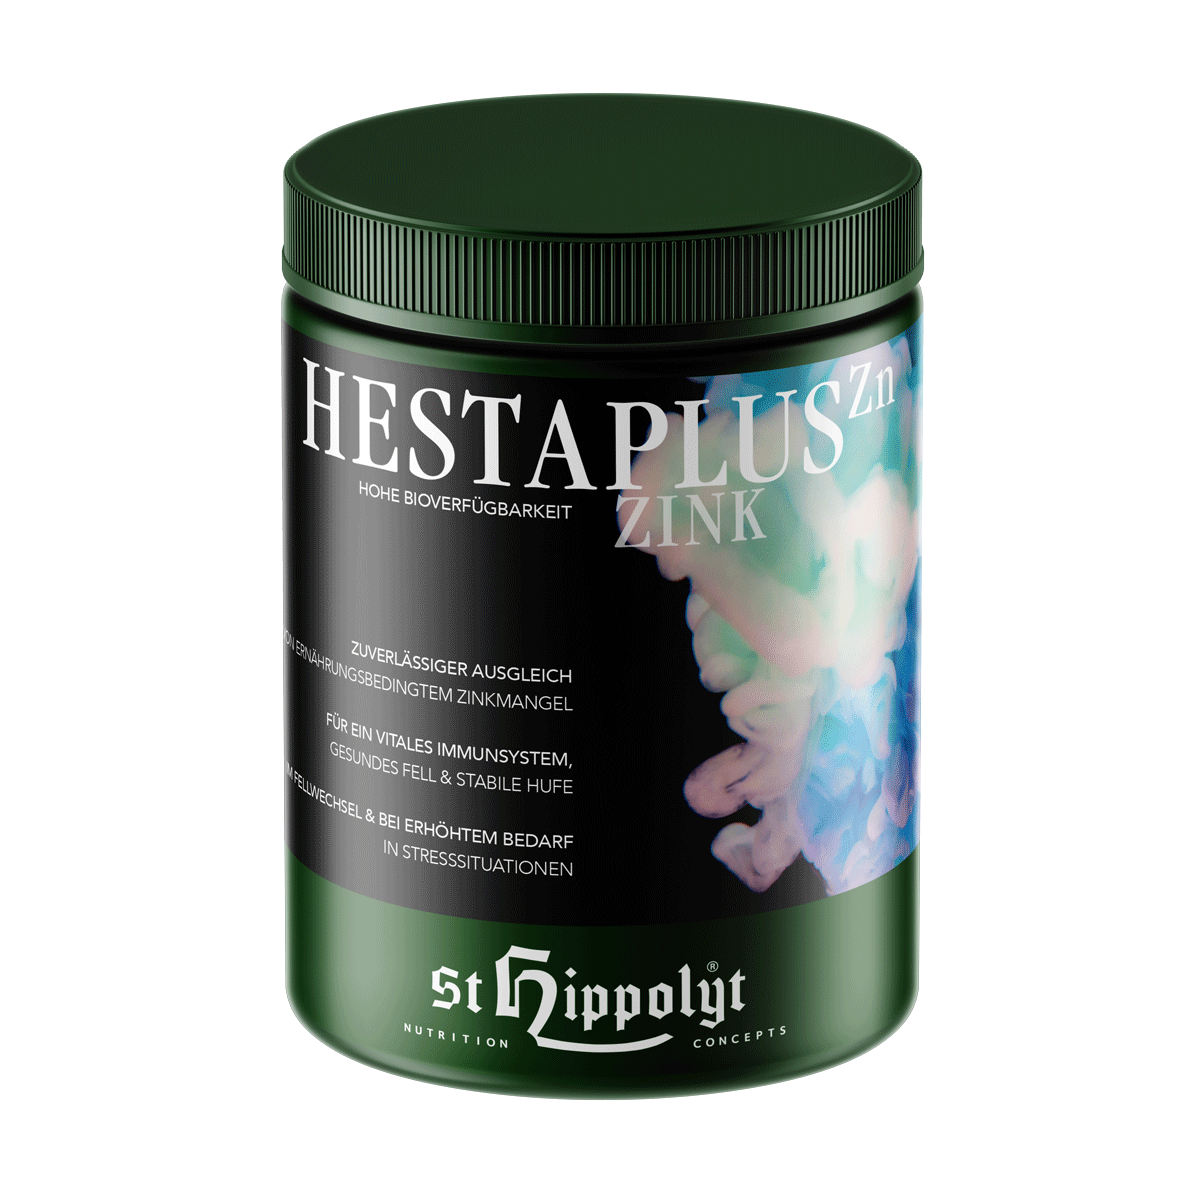 St.Hippolyt - Hesta plus Zink - zum Ausgleich bei Zinkmangel -  für Fell, Hufe, Haut und Immunsystem